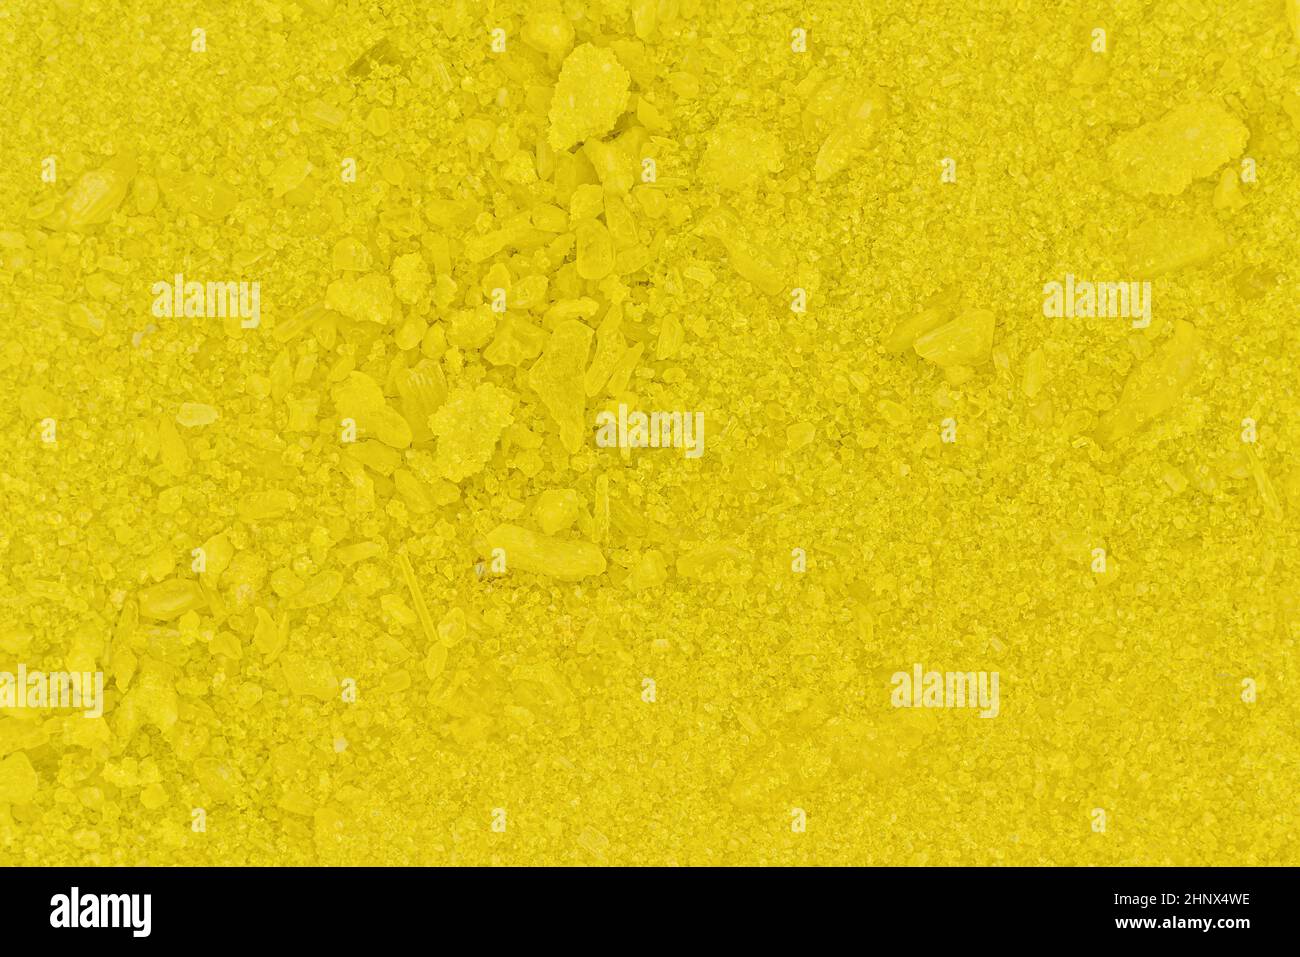 Pequeños cristales amarillos brillantes de cromato sódico, fotografía del microscopio, anchura de la imagen 16mm. Foto de stock